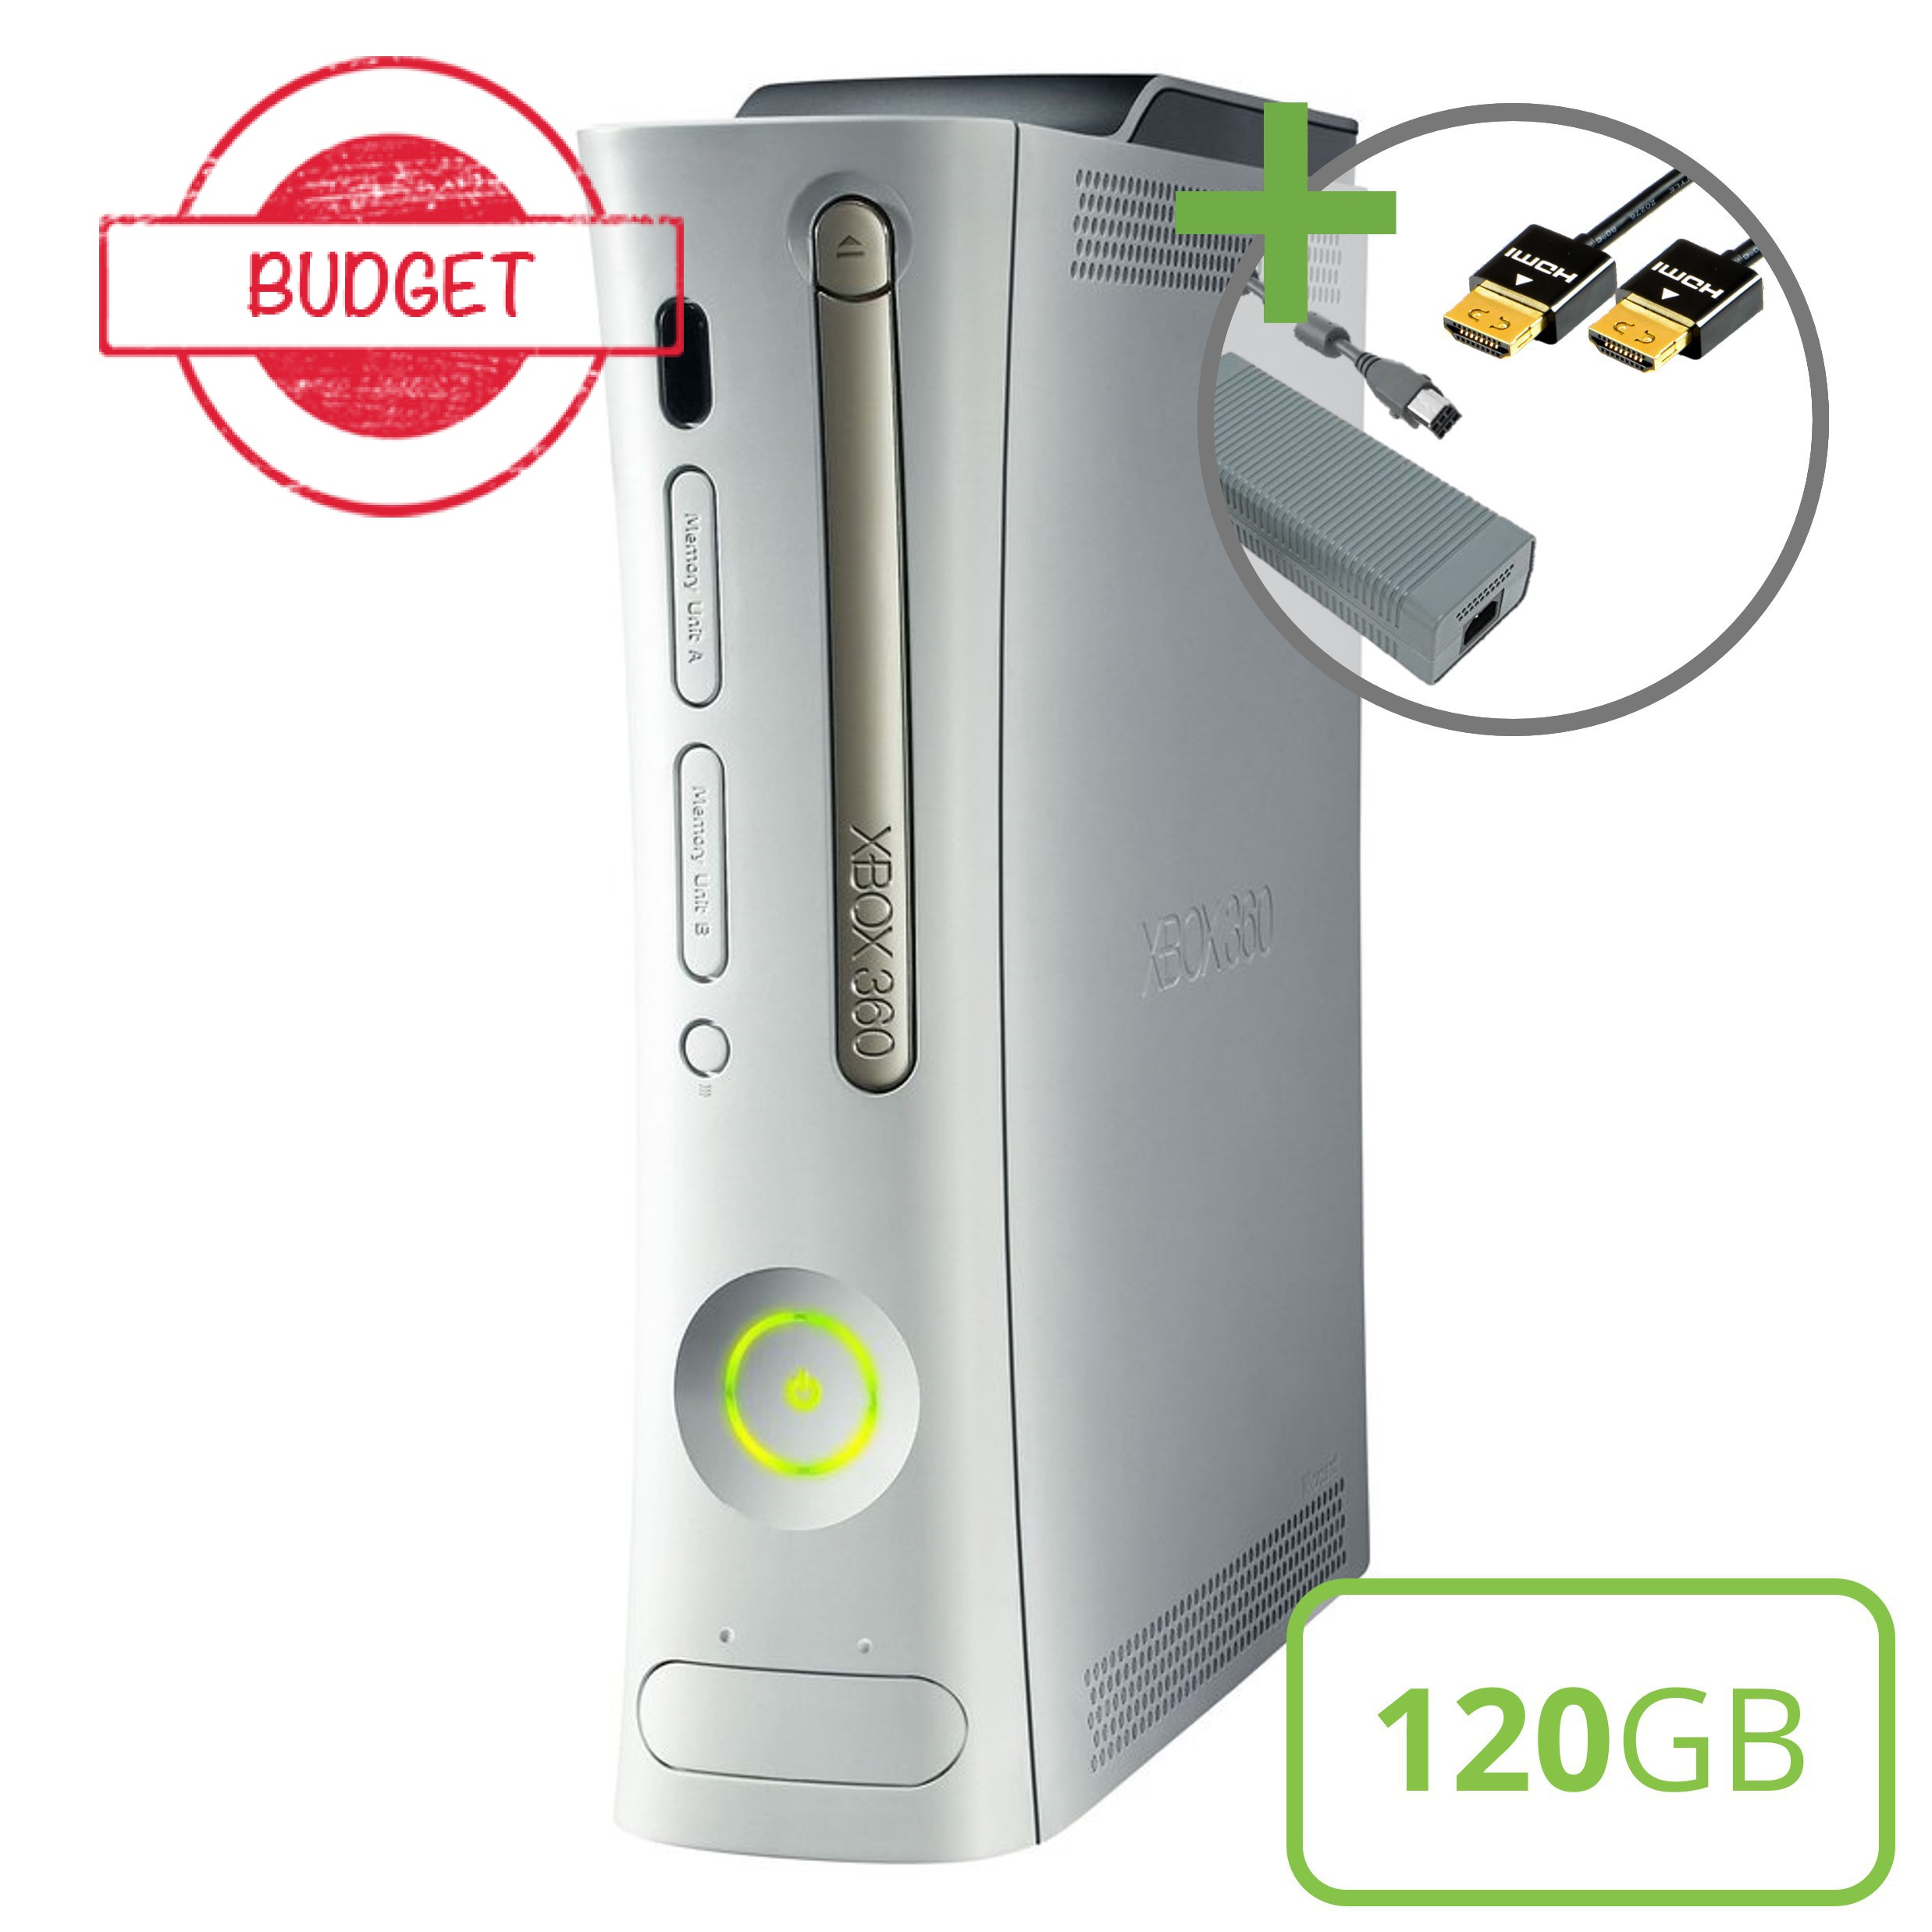 Microsoft Xbox 360 Premium Console (HDMI) - 120GB - Budget Kopen | Xbox 360 Hardware